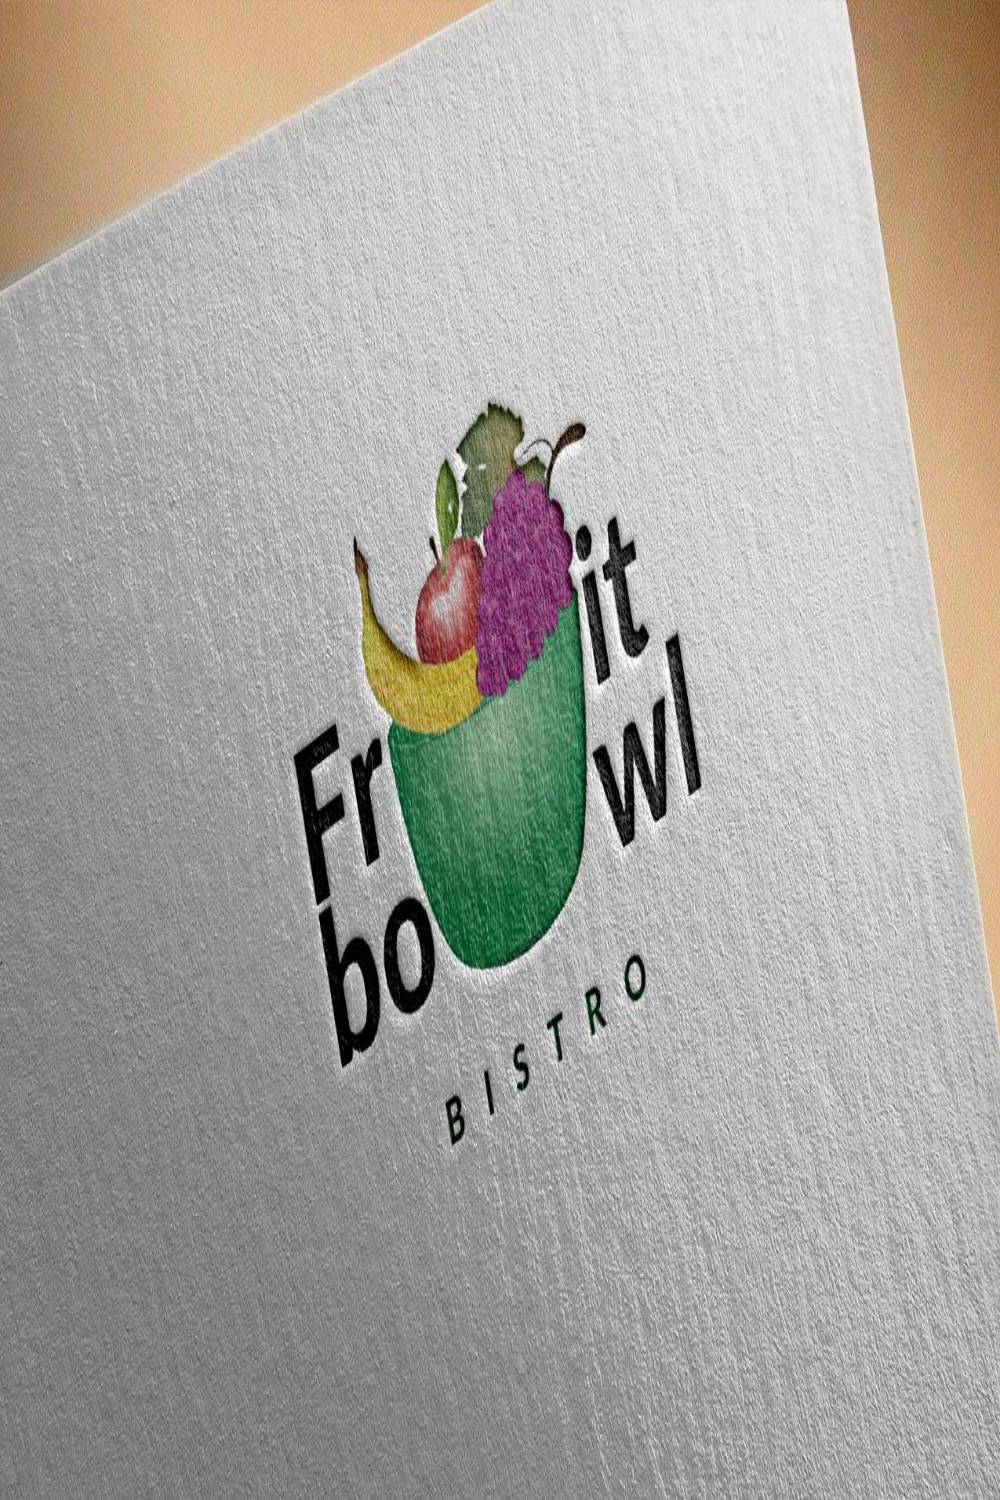 Fruit Bowl Bistro Logo Design pinterest image.